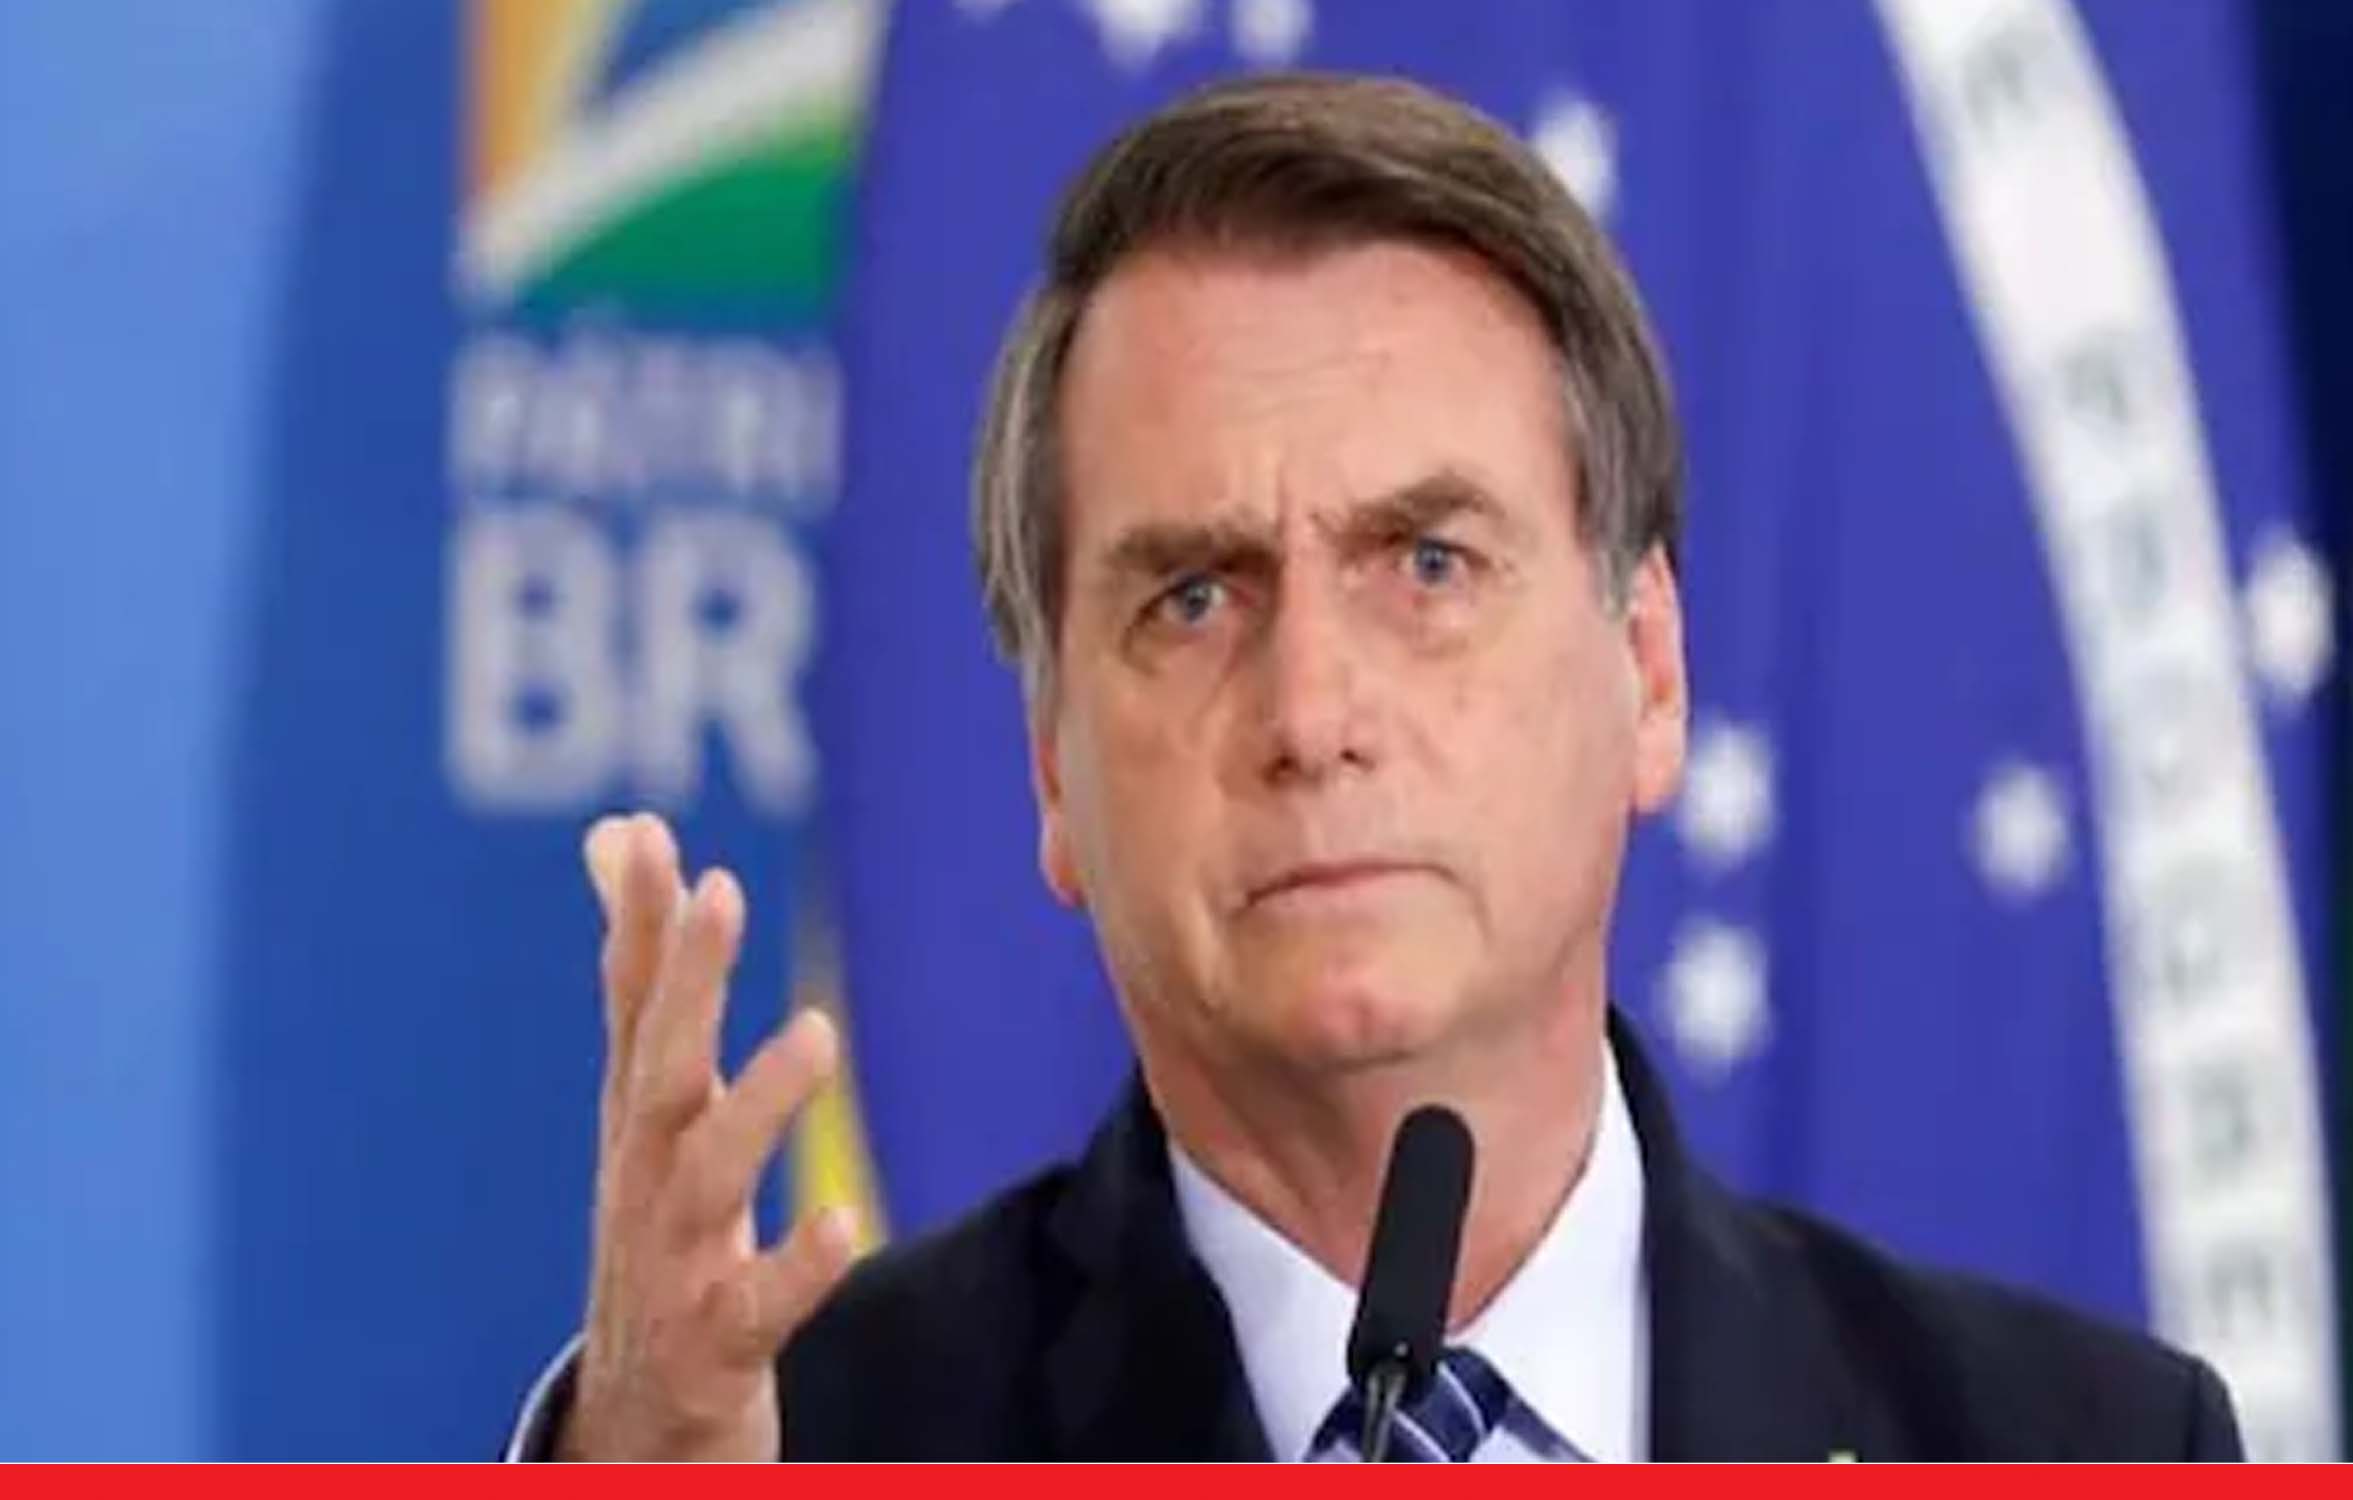 ब्राजील के राष्‍ट्रपति नहीं लगवाएंगे वैक्‍सीन, कहा- मेरा इम्यून सिस्टम मजबूत